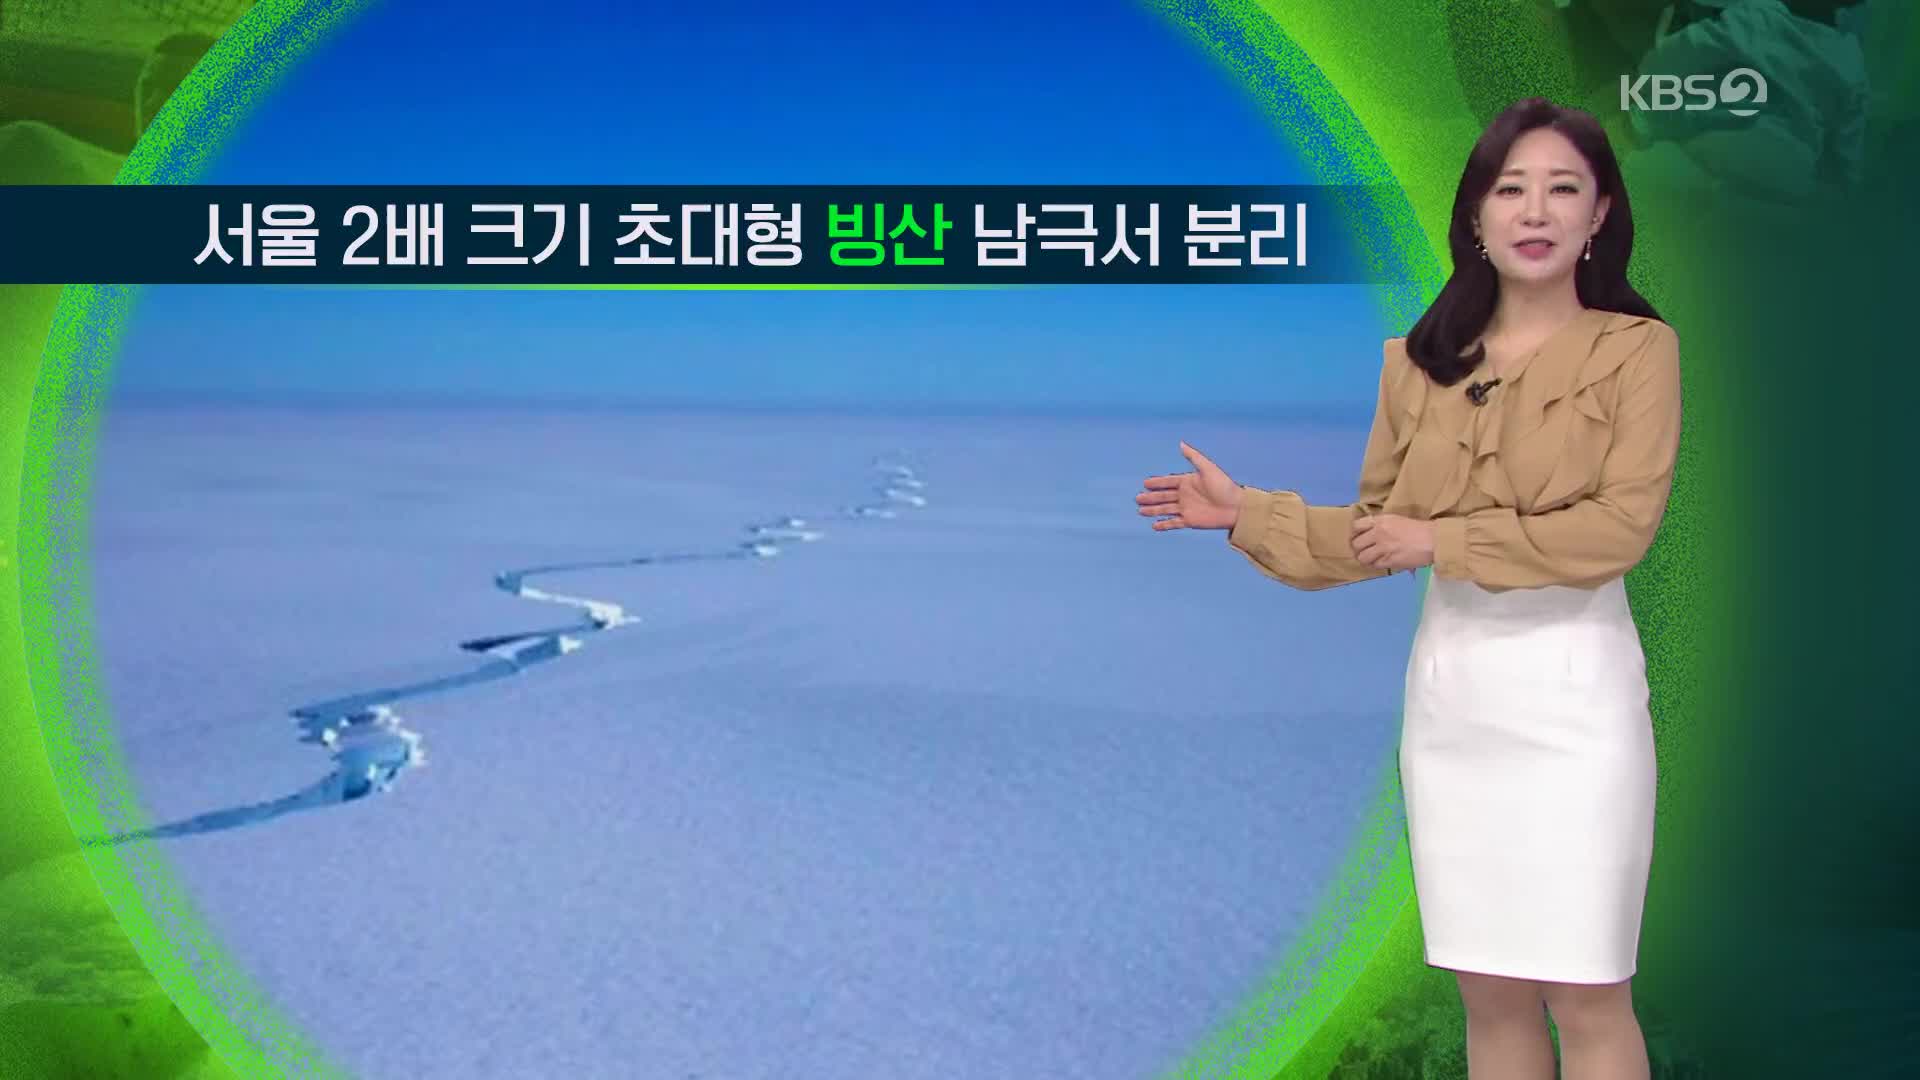 [지구촌 날씨] 서울 2배 크기 초대형 빙산 남극서 분리